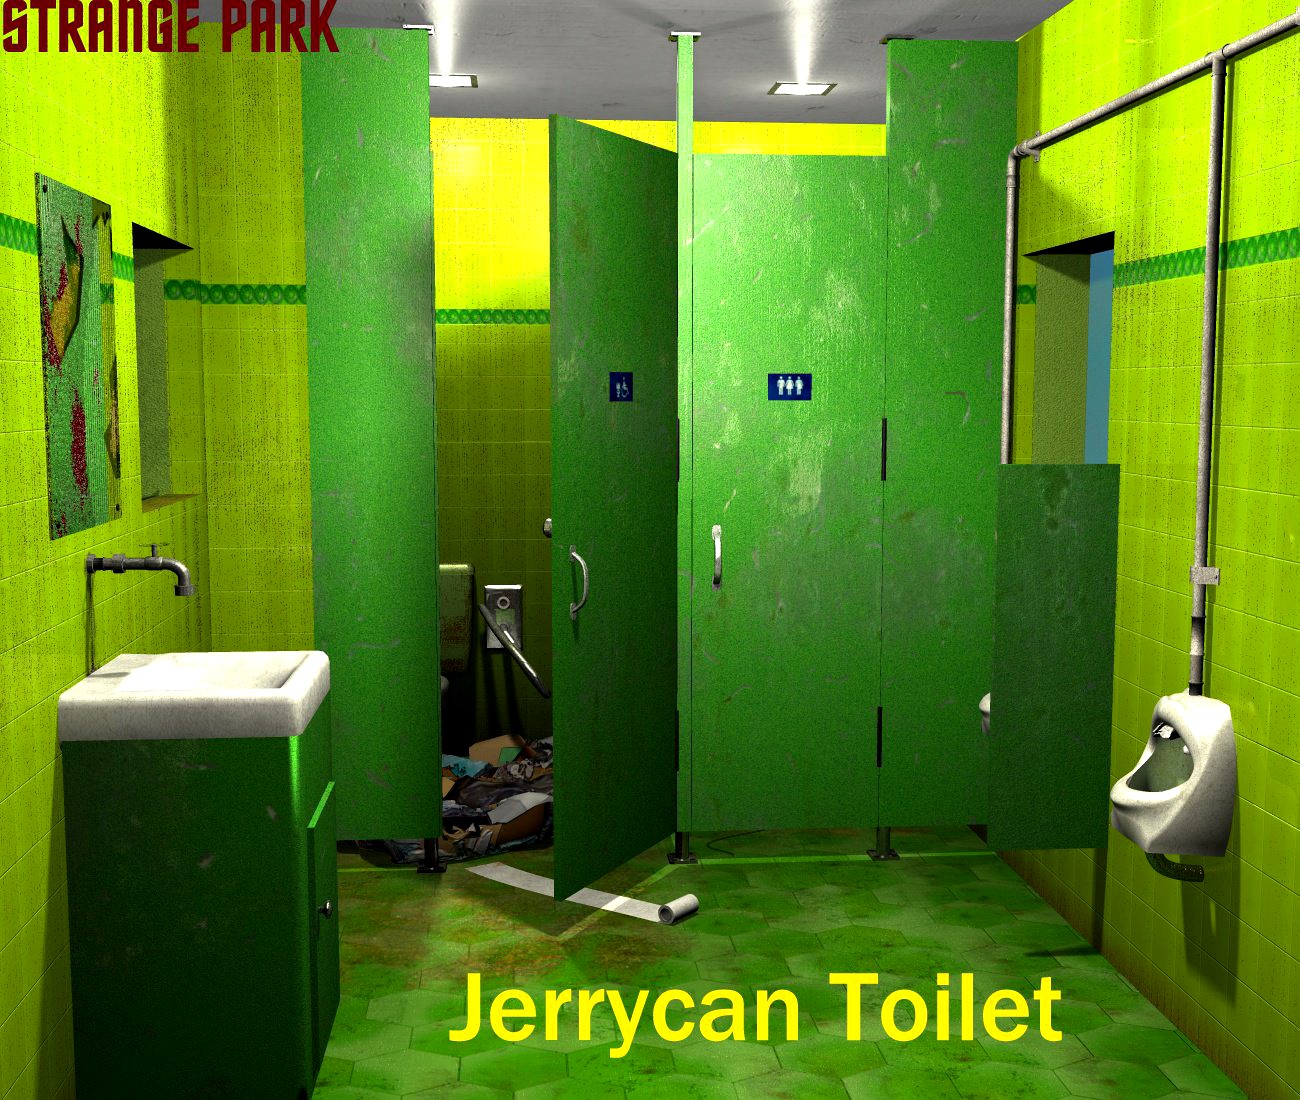 Strange Park - Jerrycan Toilet - Extended License